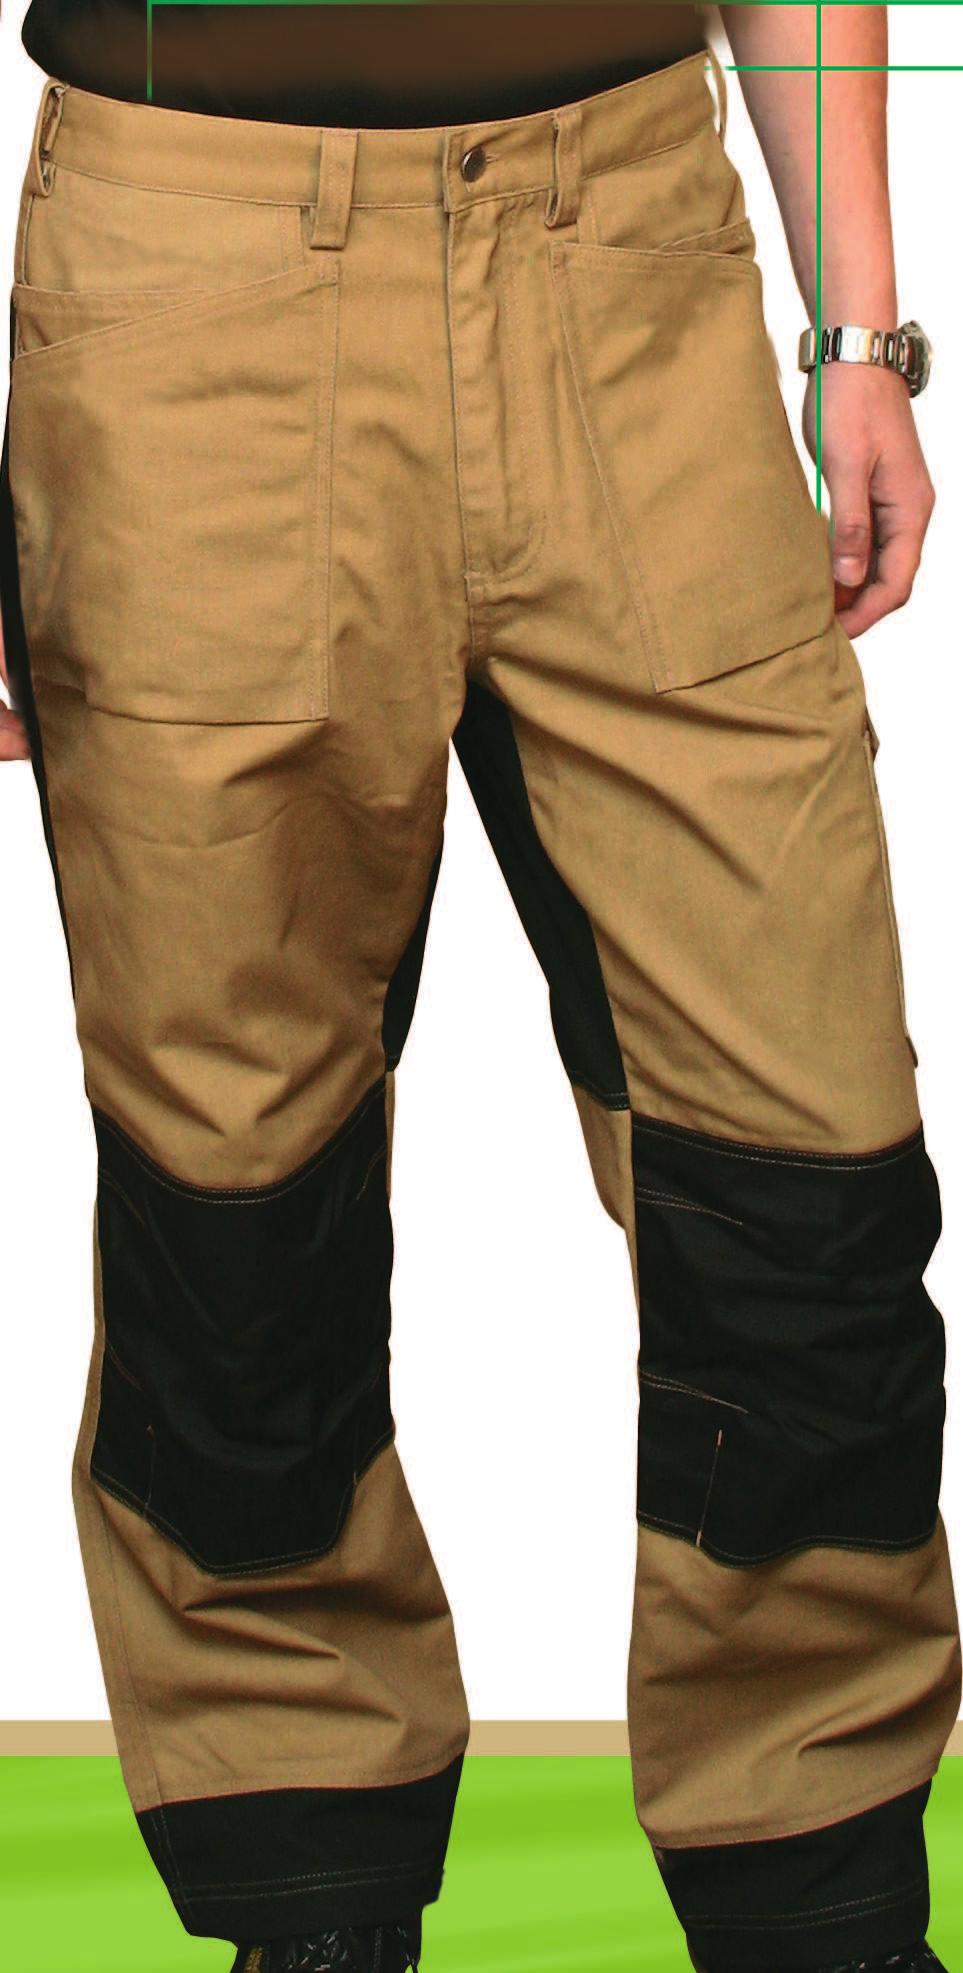 kolena s možností vložení výztuhy kolen, zesílená zadní část kalhot, velikost 48, 50, 52, 54, 56, 58, 60, 62 Working jacket, high quality fabric, polyester/cotton (65/35) 320 g/m2, reiforced knees